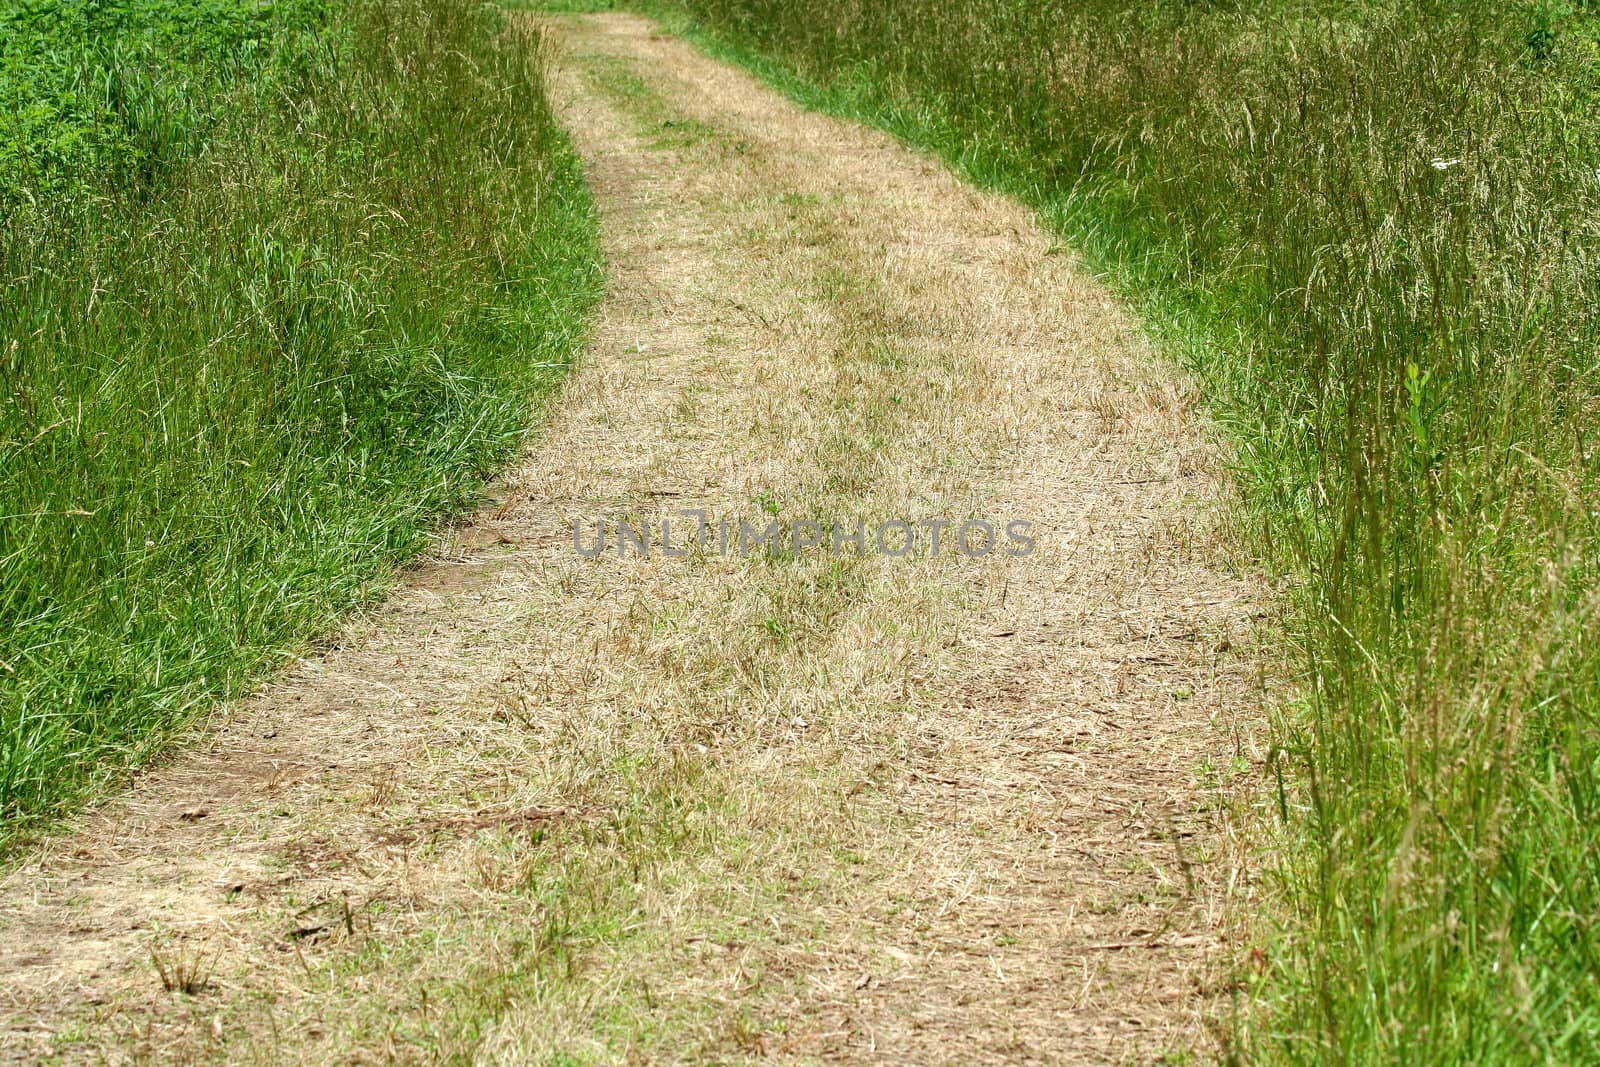 A path through a grassy field